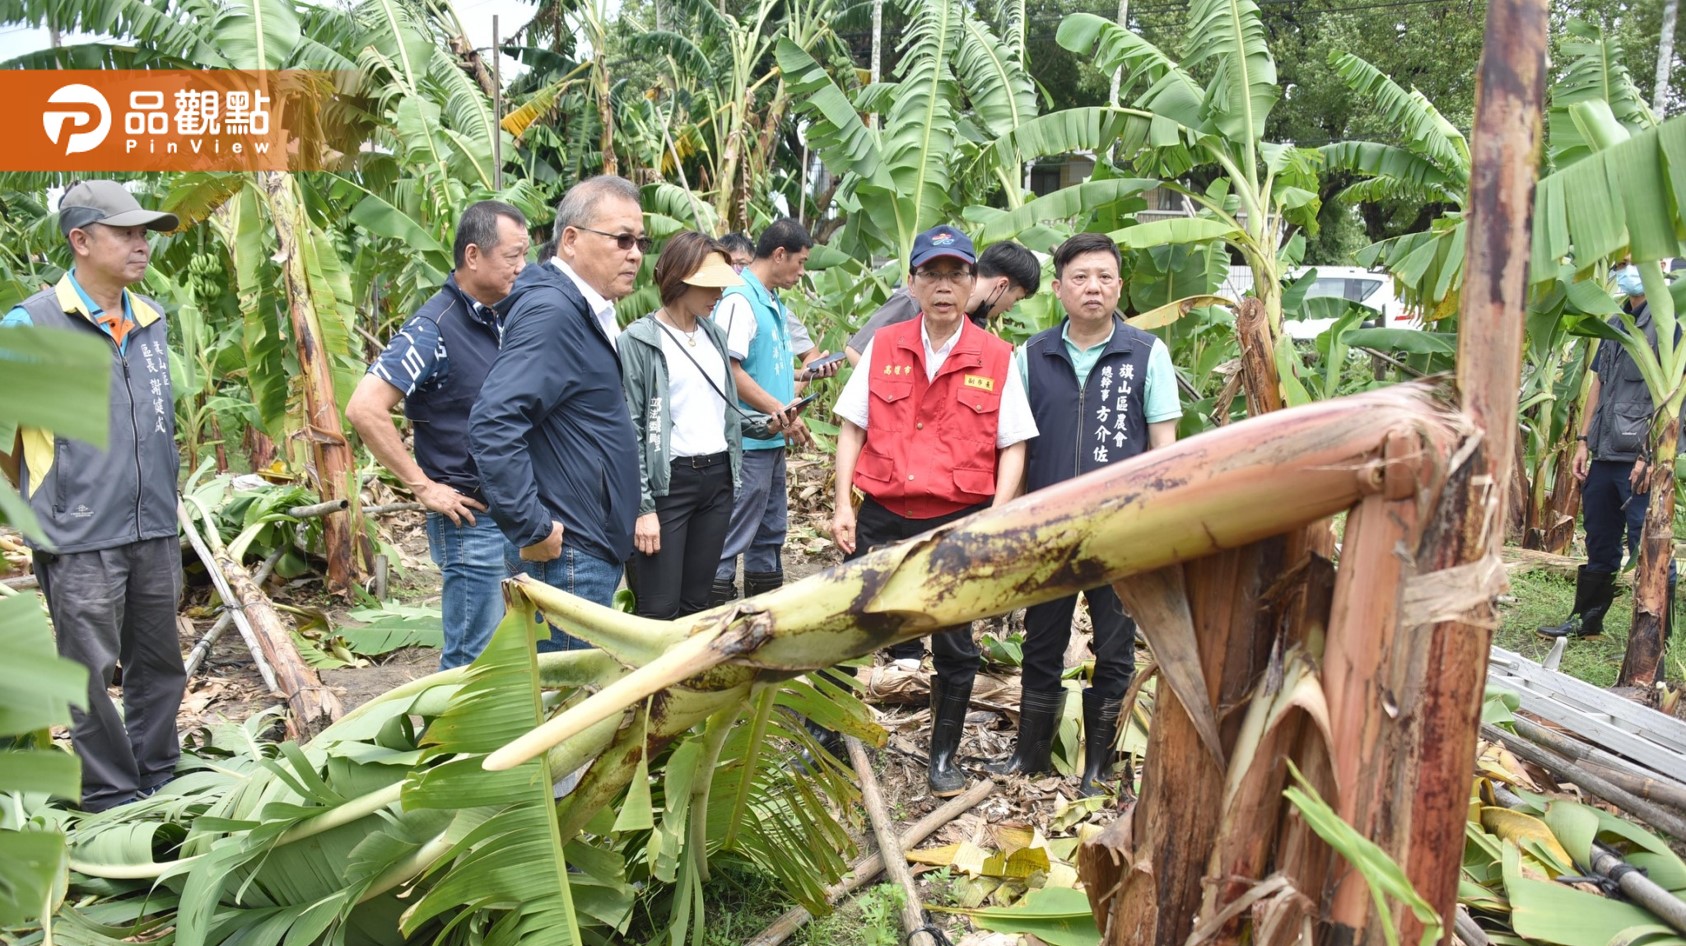 海葵颱風高雄農作受災 林欽榮要求從速從寬從優查報 協助及早復耕